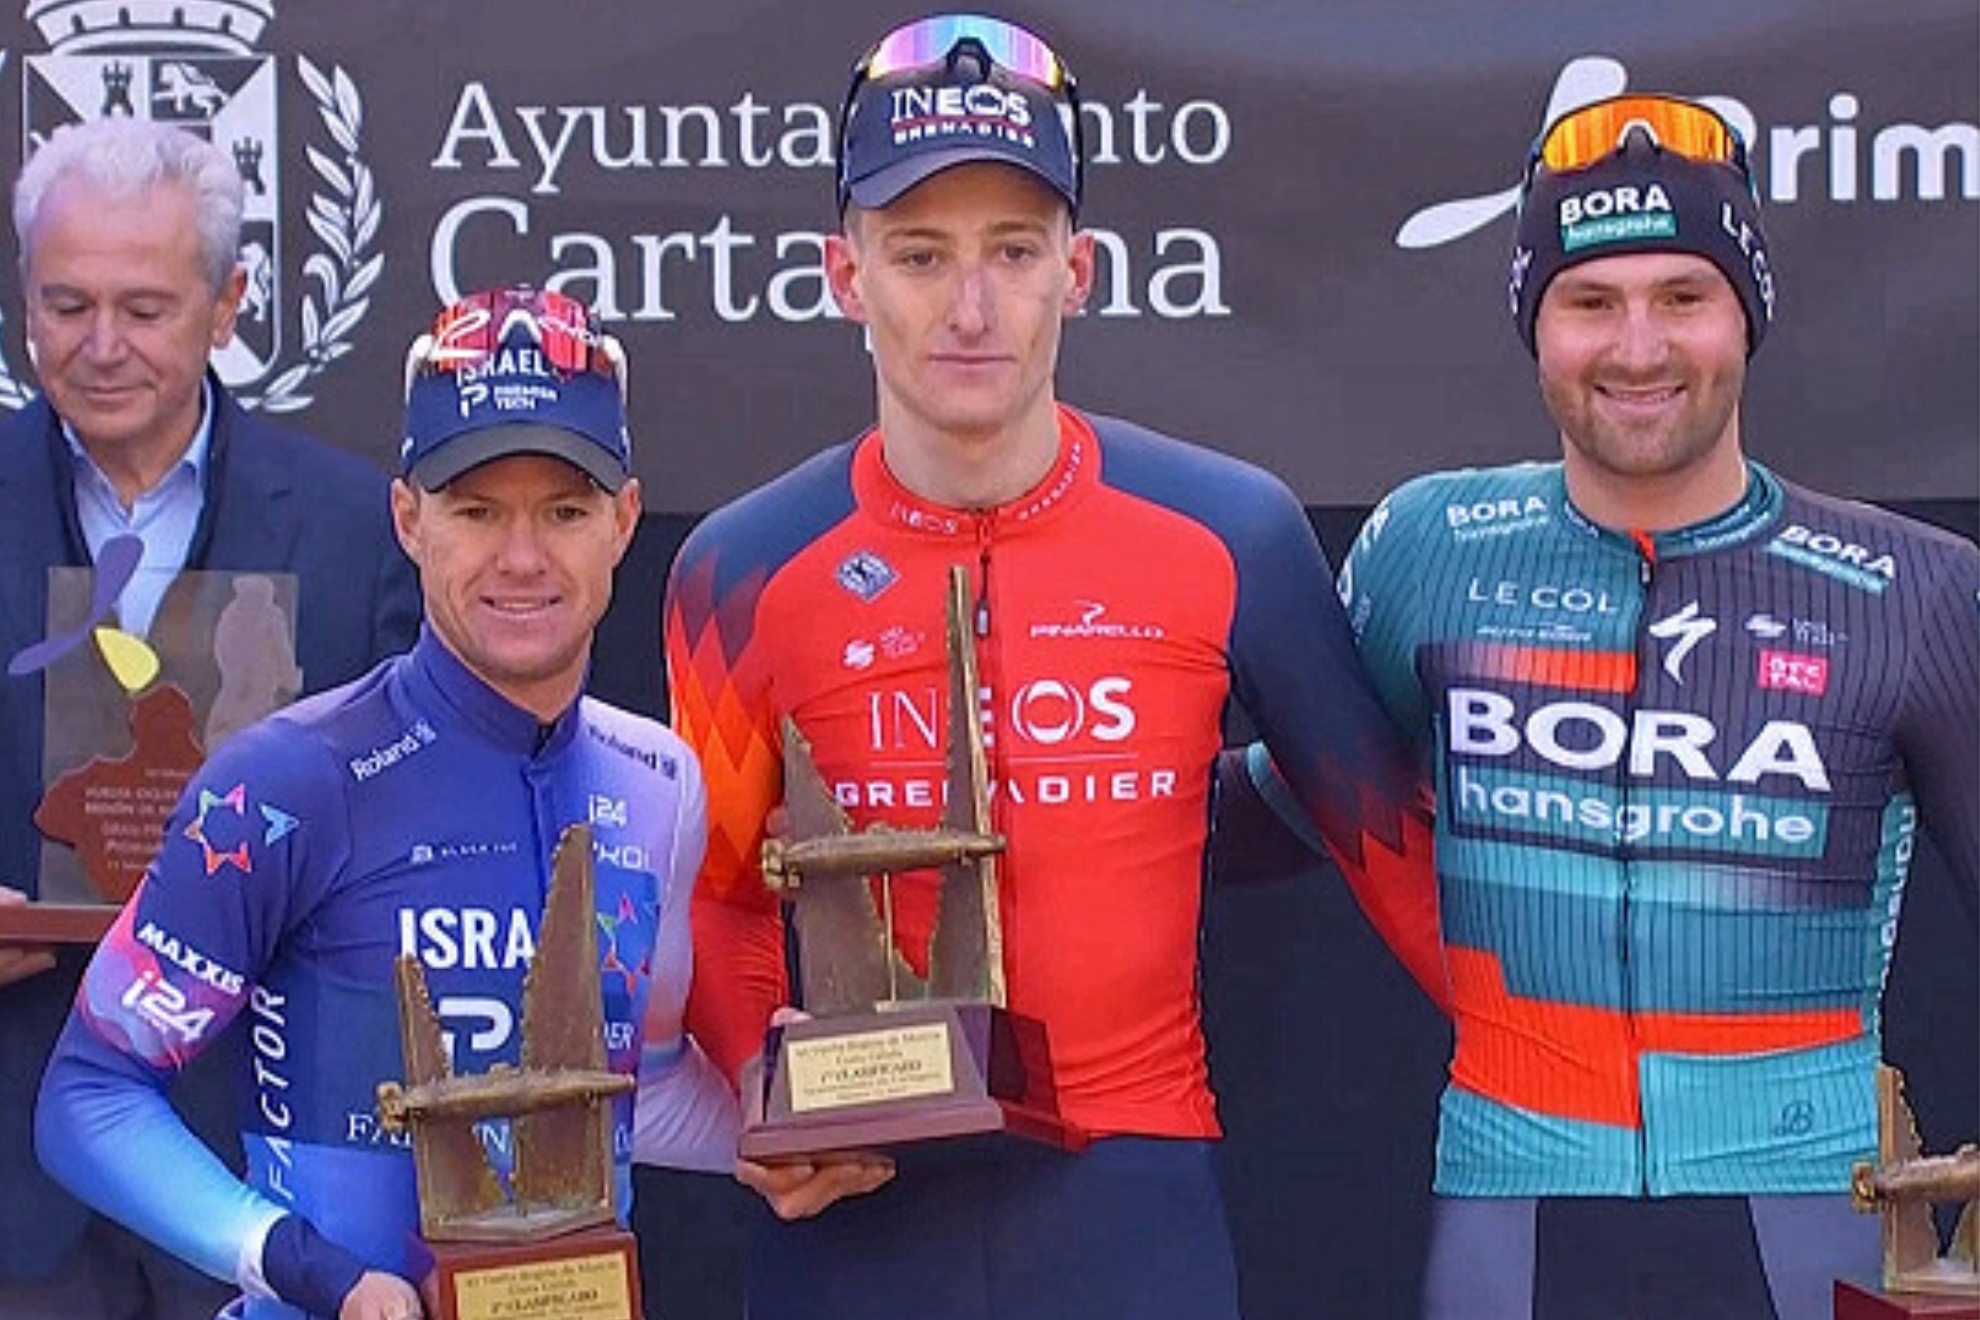 El britnico Ben Turner, del Ineos, gana al esprint la Vuelta a Murcia